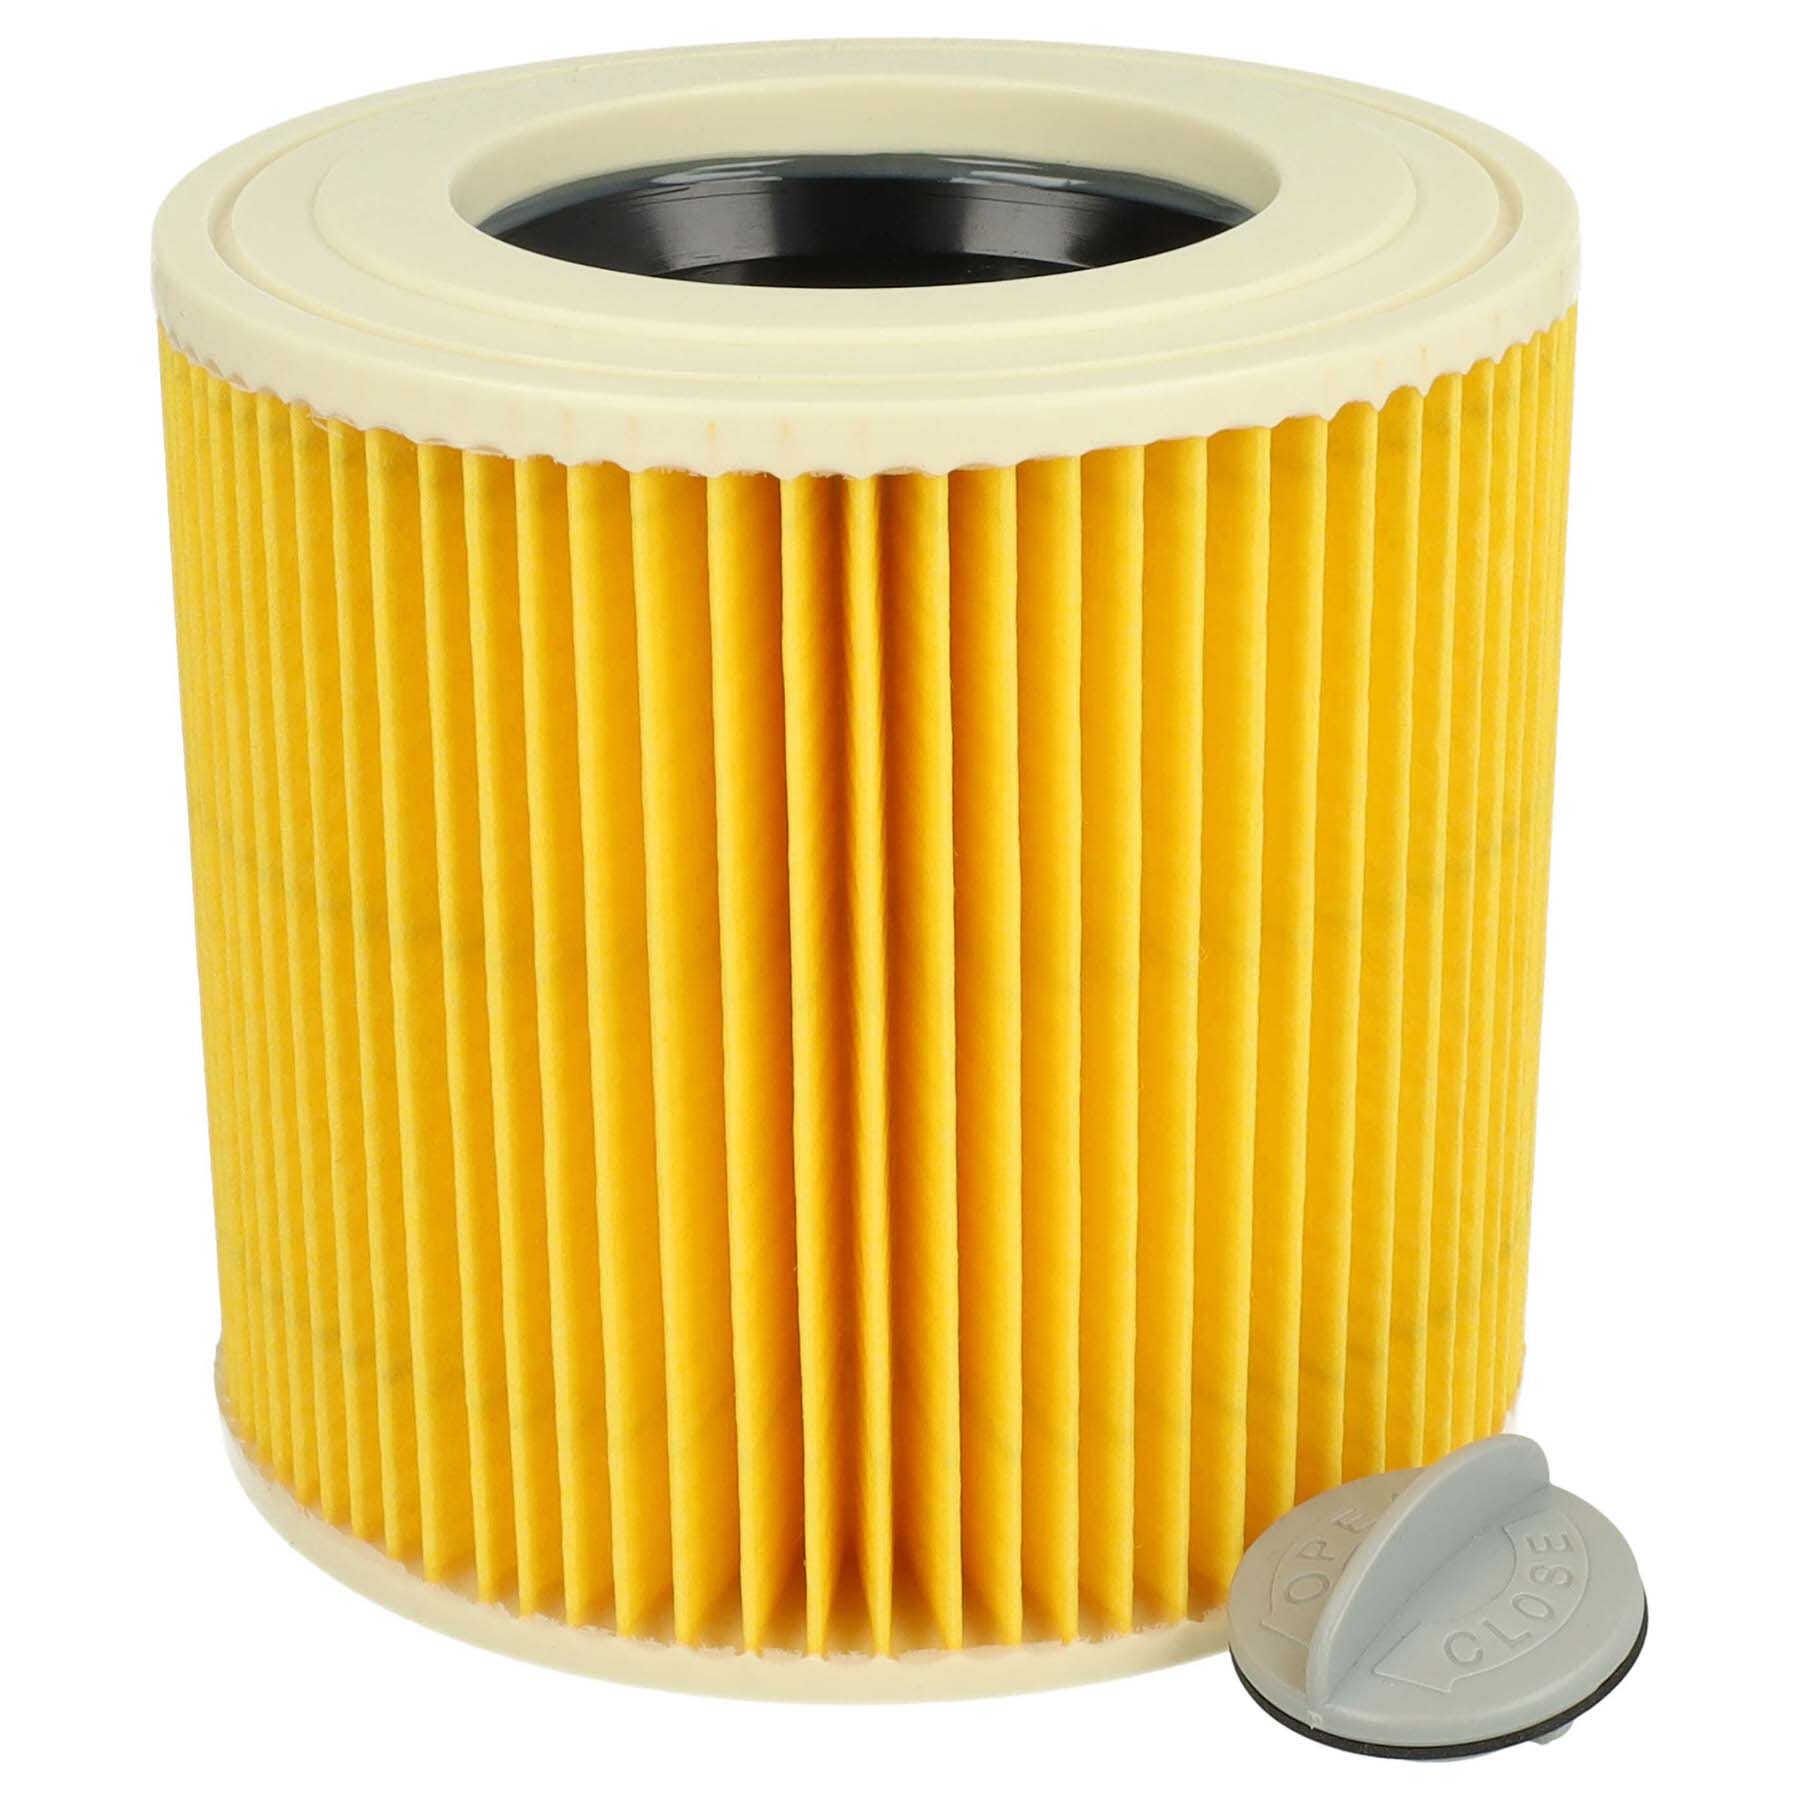 Filtre à poussière d'air pour aspirateur Karcher, pièces de filtre